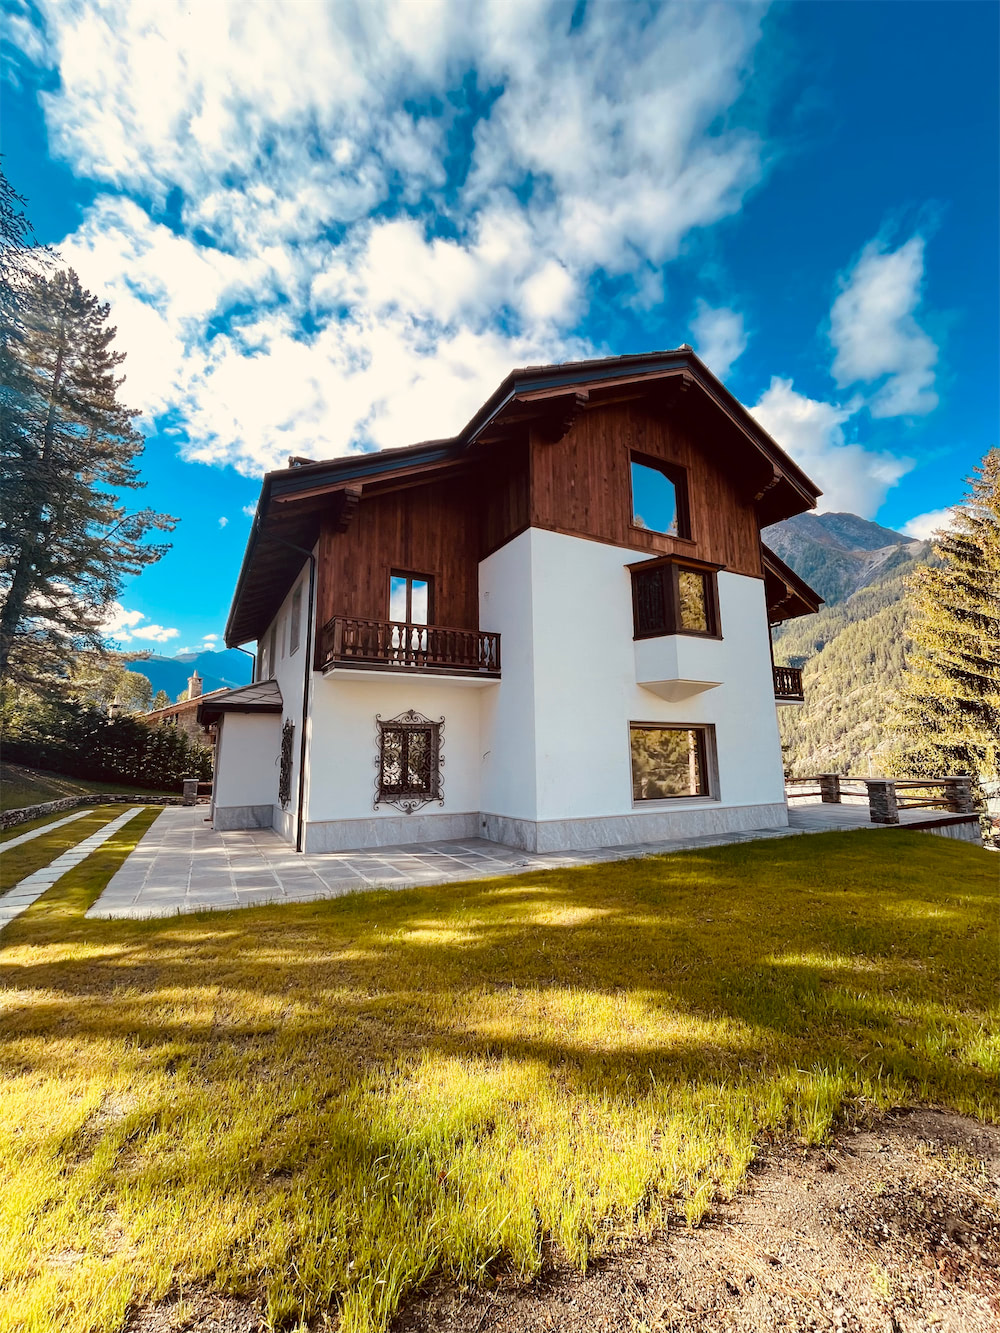 Case di lusso Aosta: vista di un edificio a due piani rivestito di legno e intonaco bianco, con quattro finestre rettangolari. Dietro la casa, montagne e cielo nuvoloso, in primo piano un prato verde su cui si stagliano ombre di nuvole.